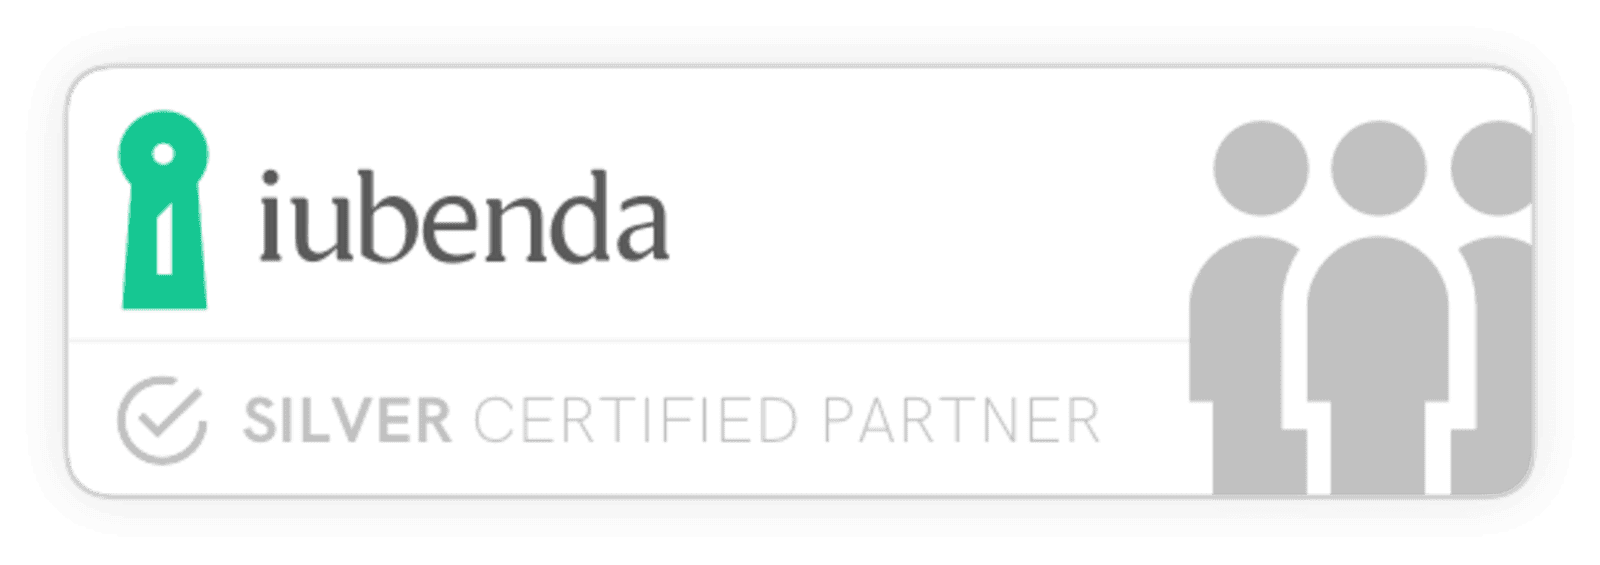 Iubenda Certified Silver Partner